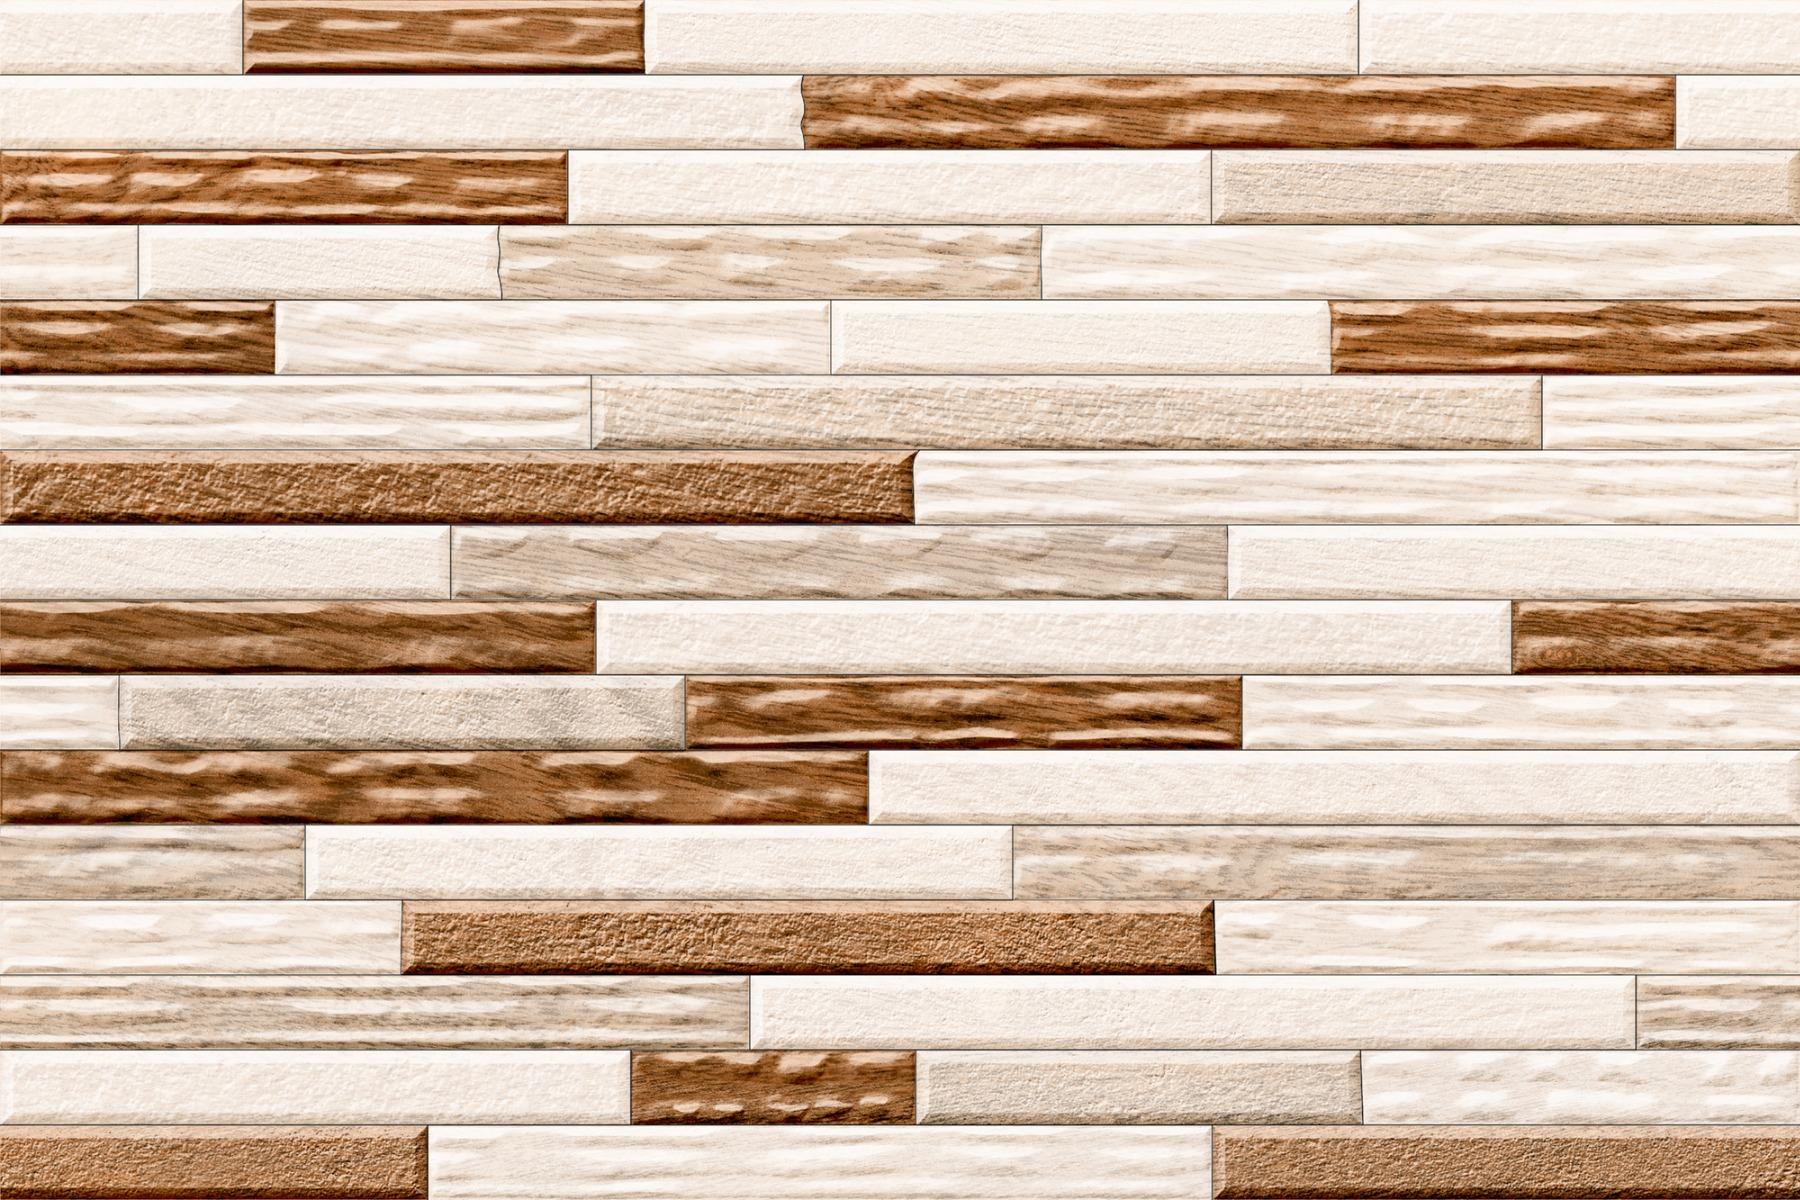 All Tiles for Bathroom Tiles, Kitchen Tiles, Balcony Tiles